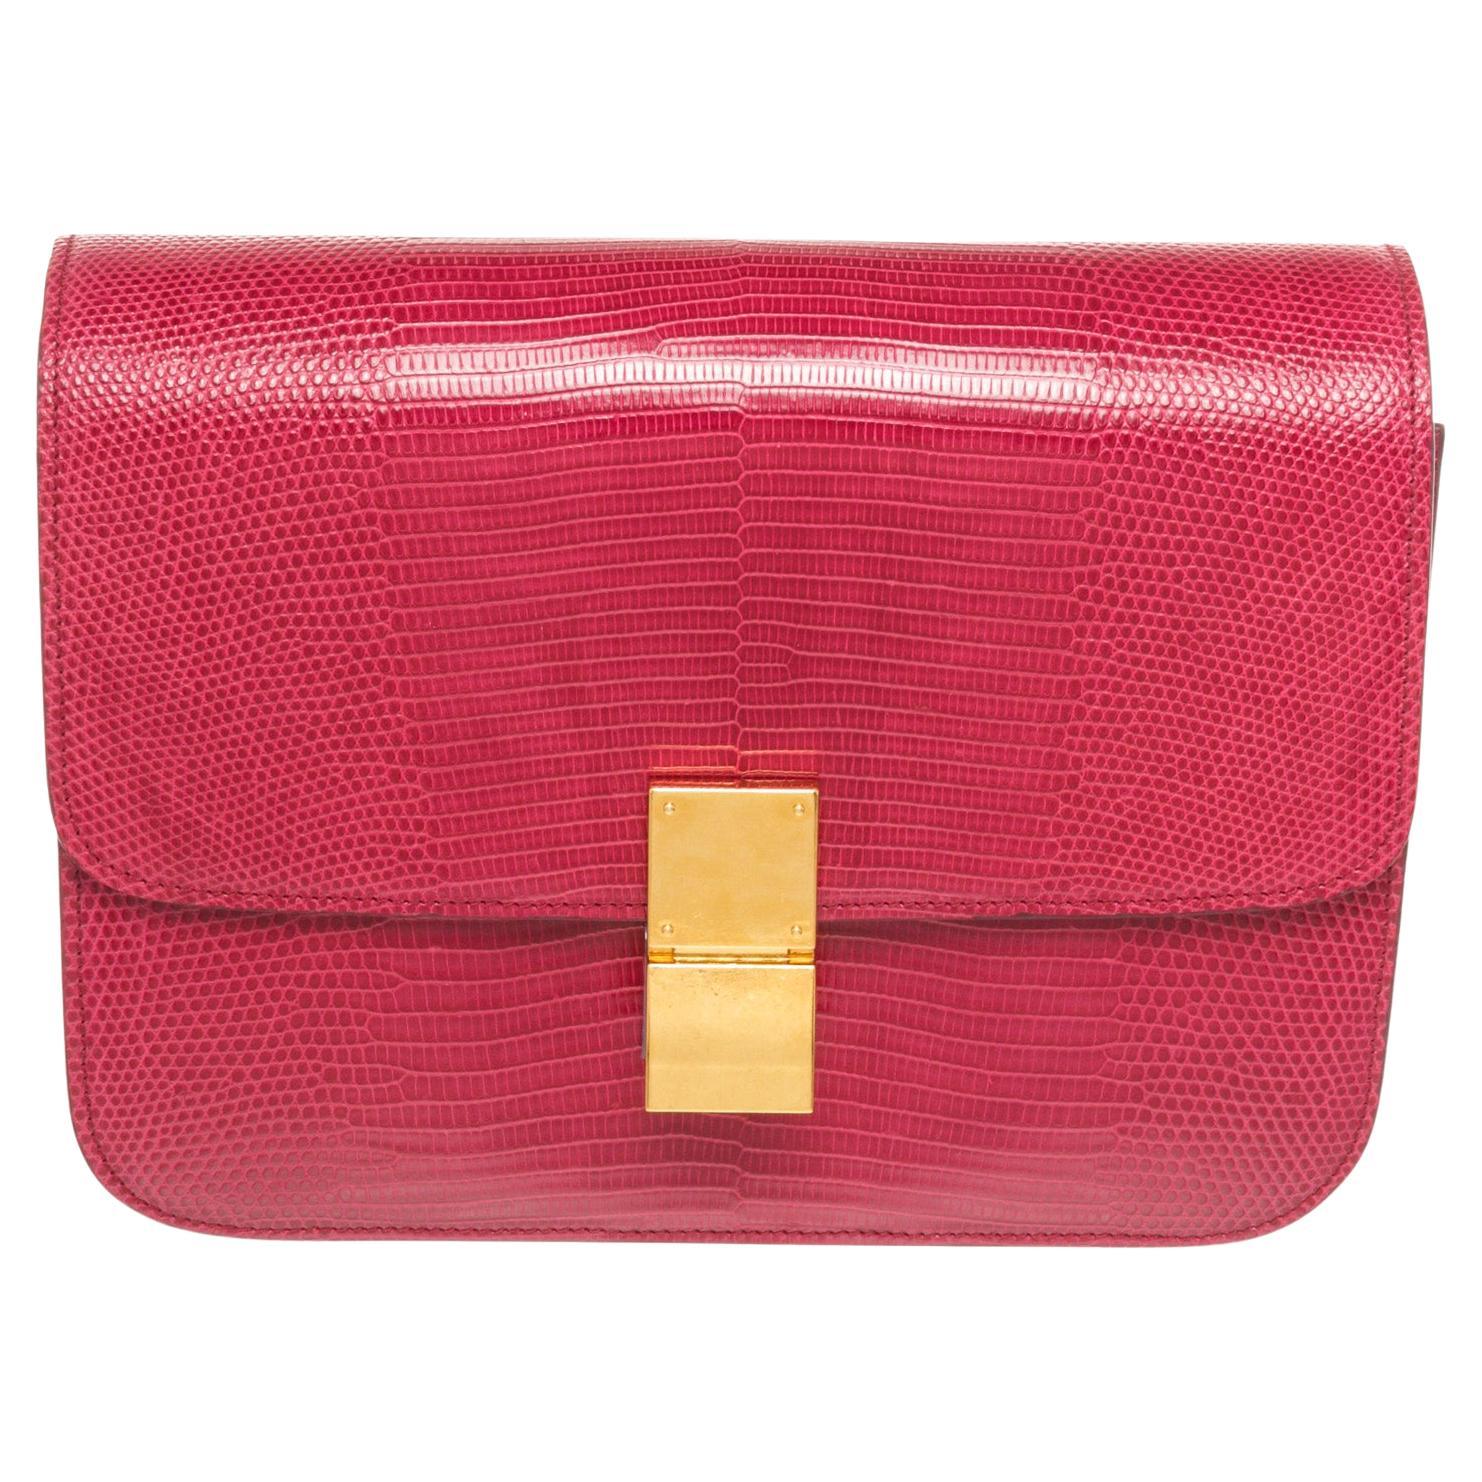 Celine Red Lizard Skin Leather Medium Box Shoulder Bag